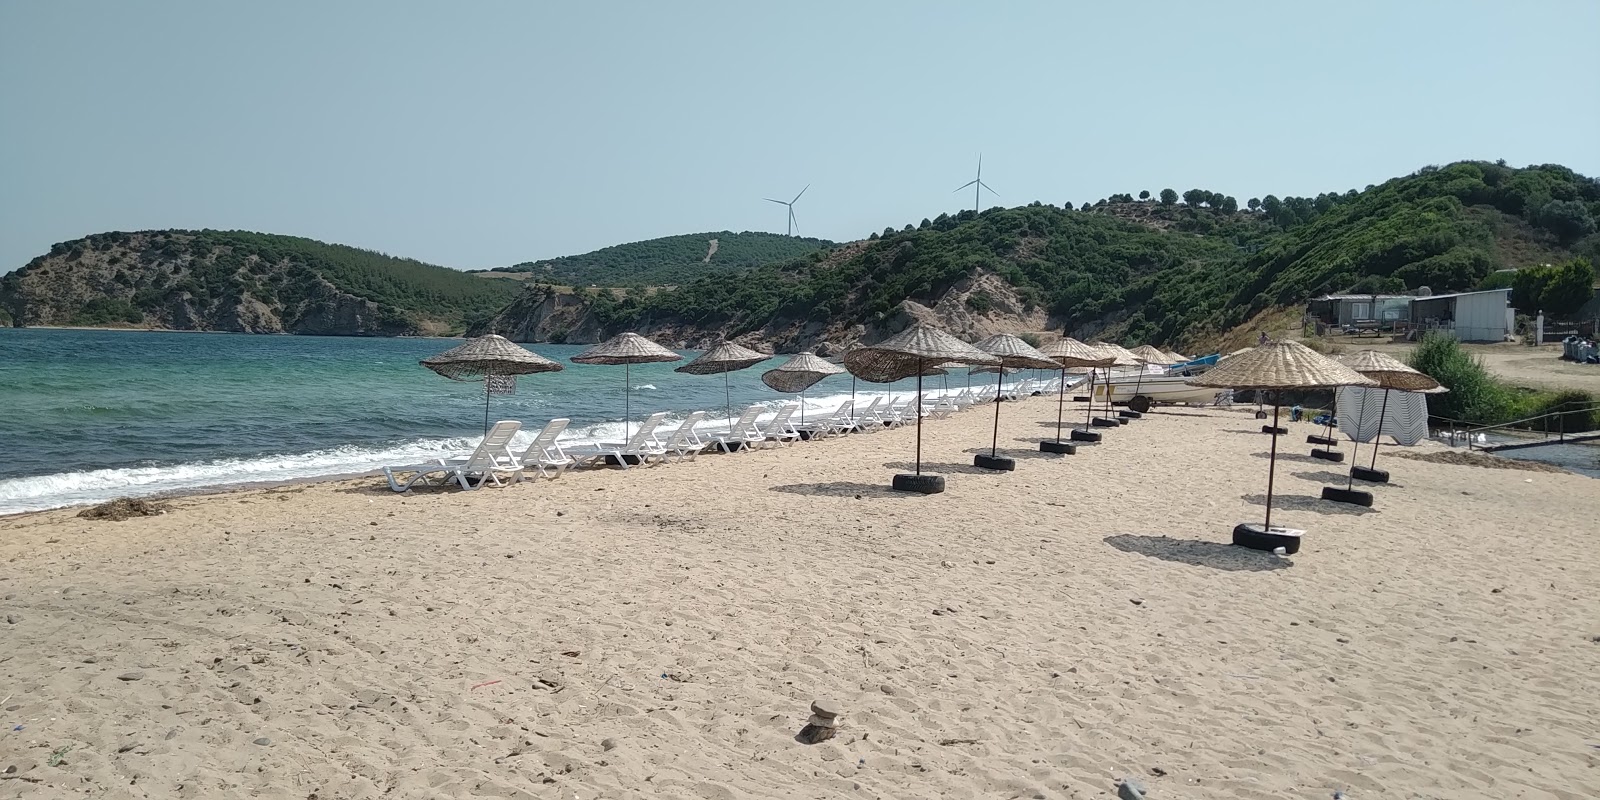 Fotografie cu Sahmelek beach zonele de facilități